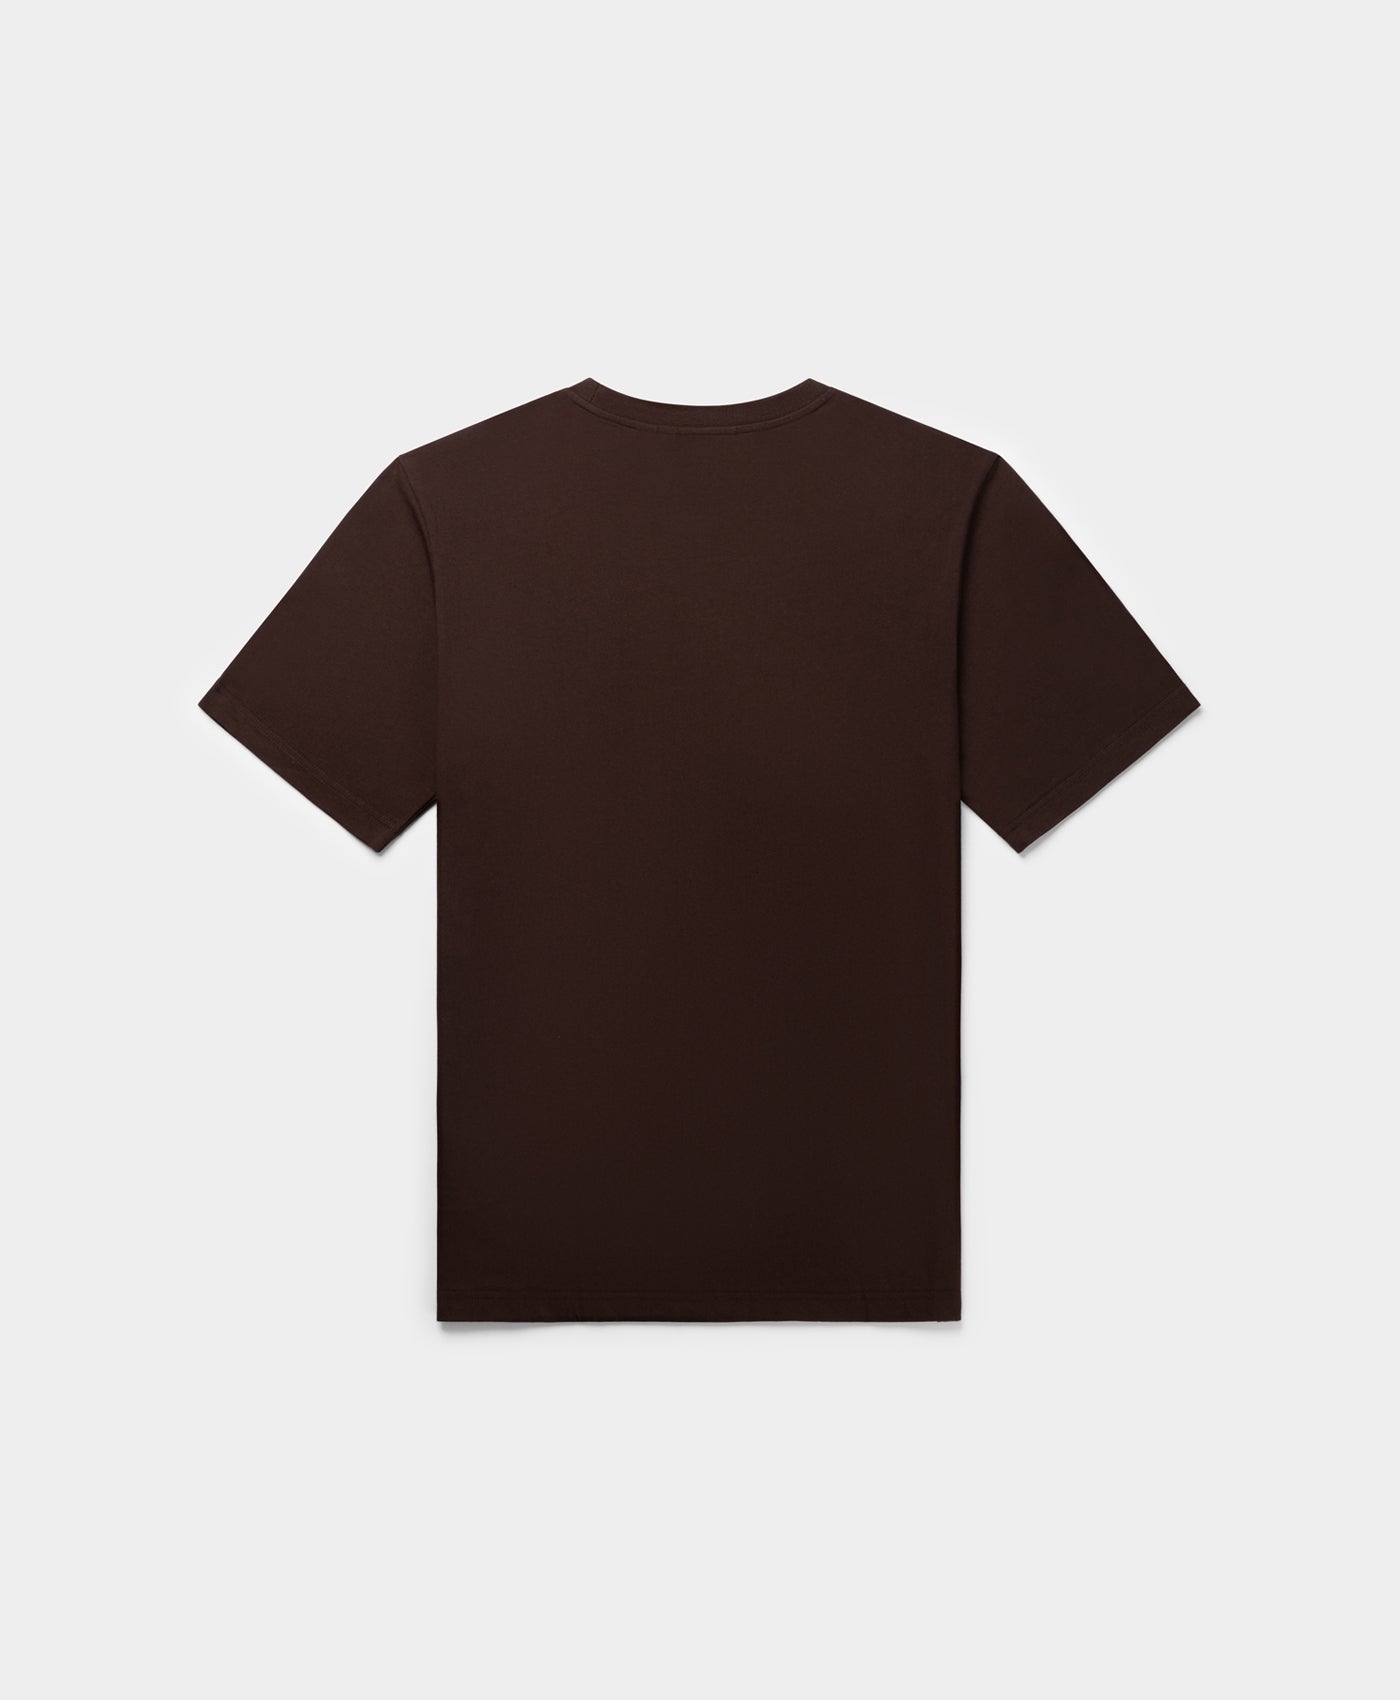 DP - Syrup Brown Etype T-Shirt - Packshot - Rear